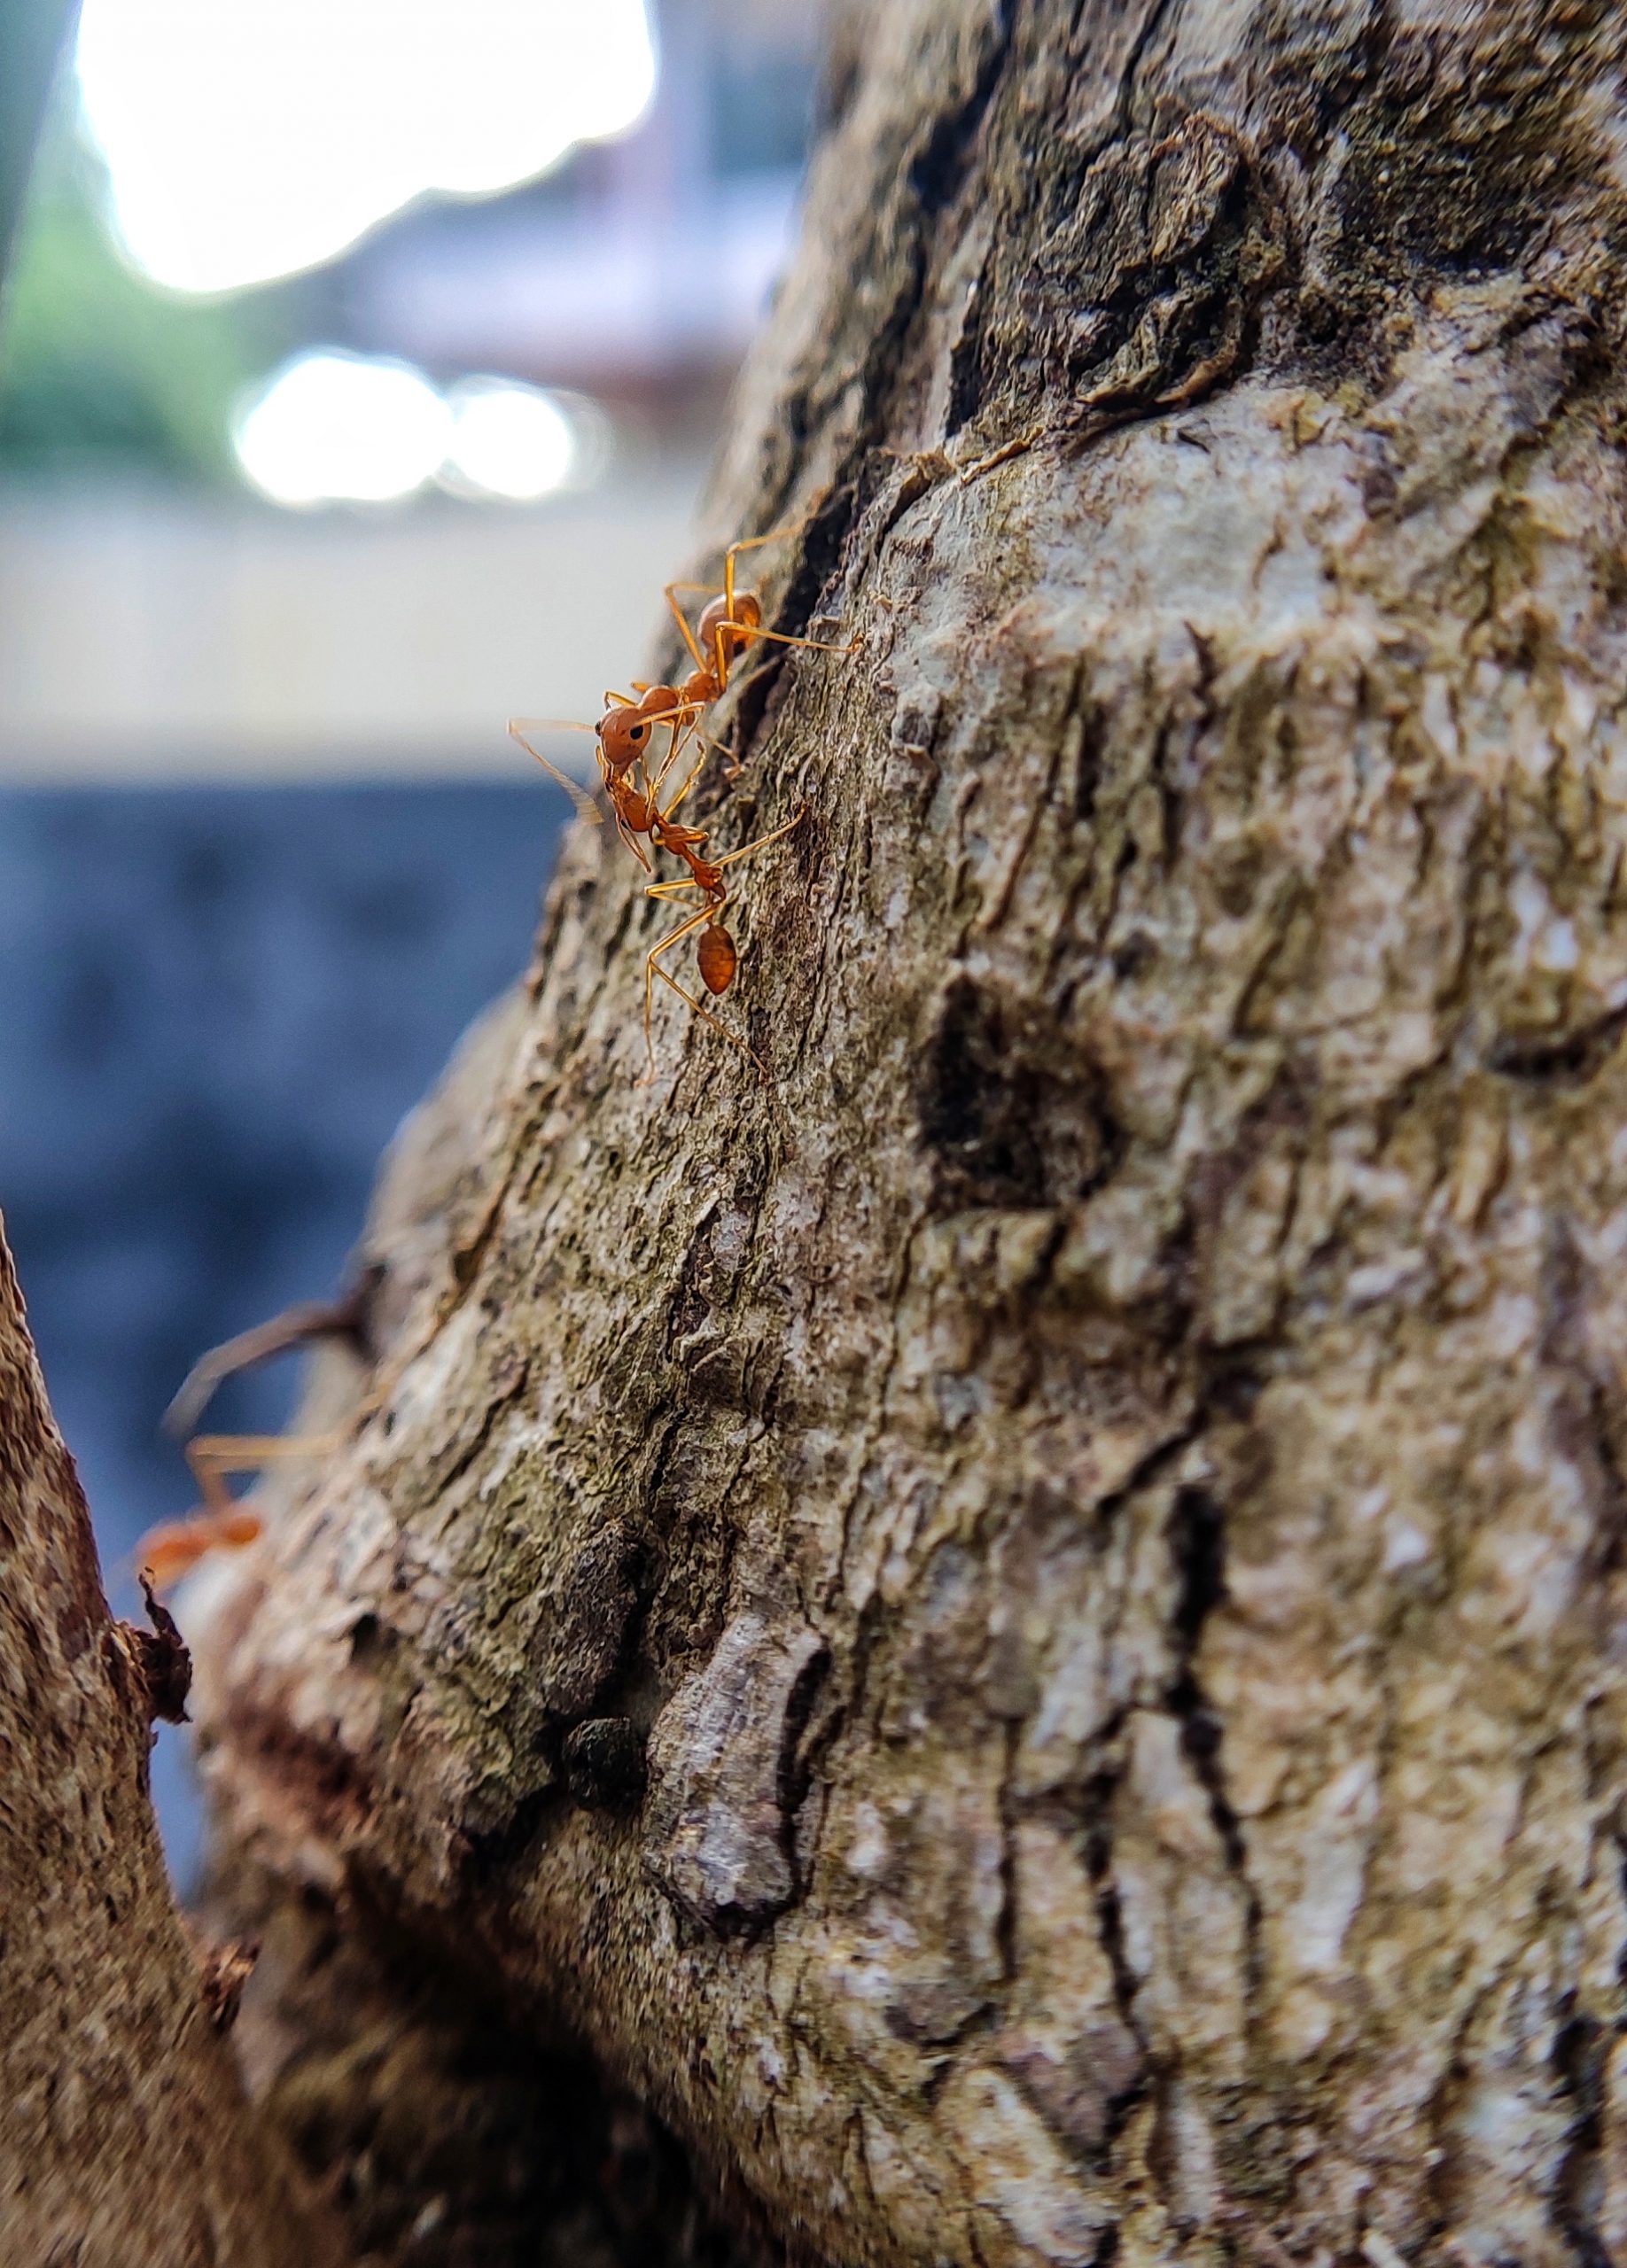 Ants on tree